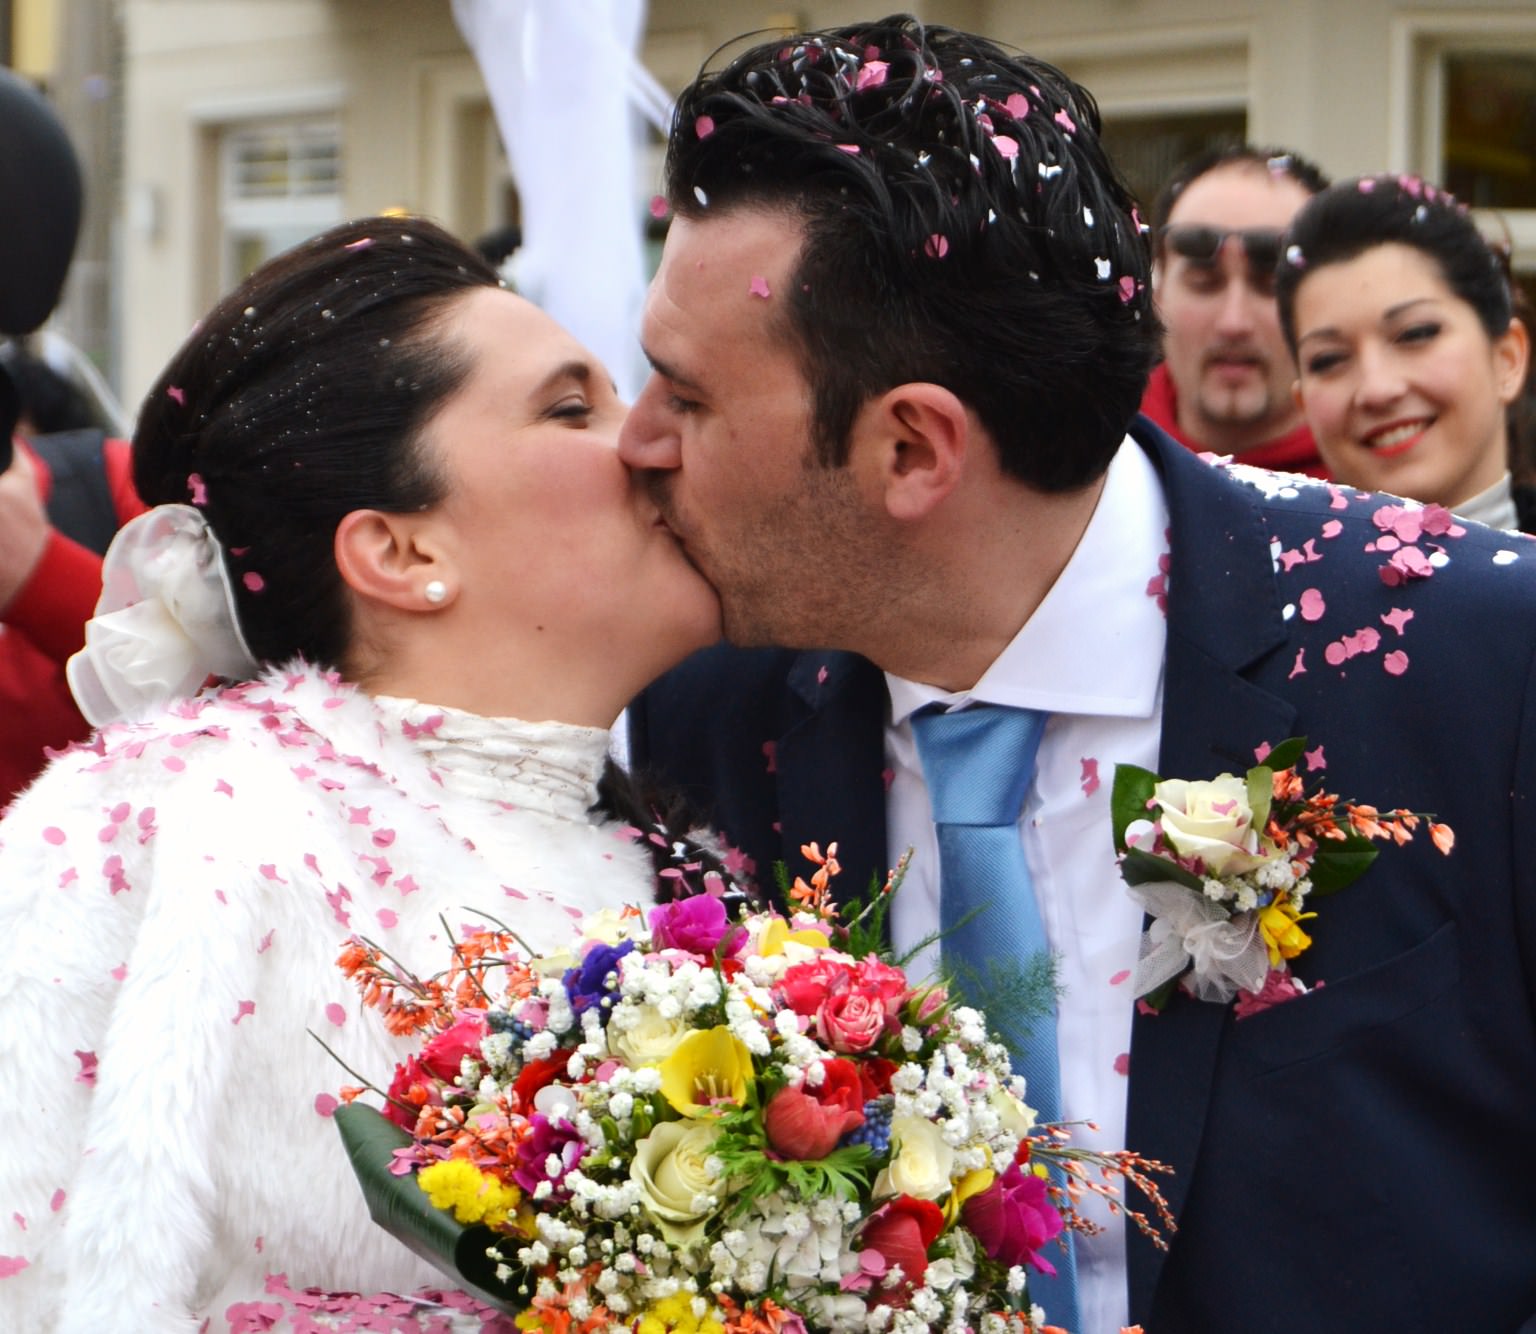 L’amore a Carnevale: Simone e Irene si sposano sul carro di Allegrucci (foto e video)